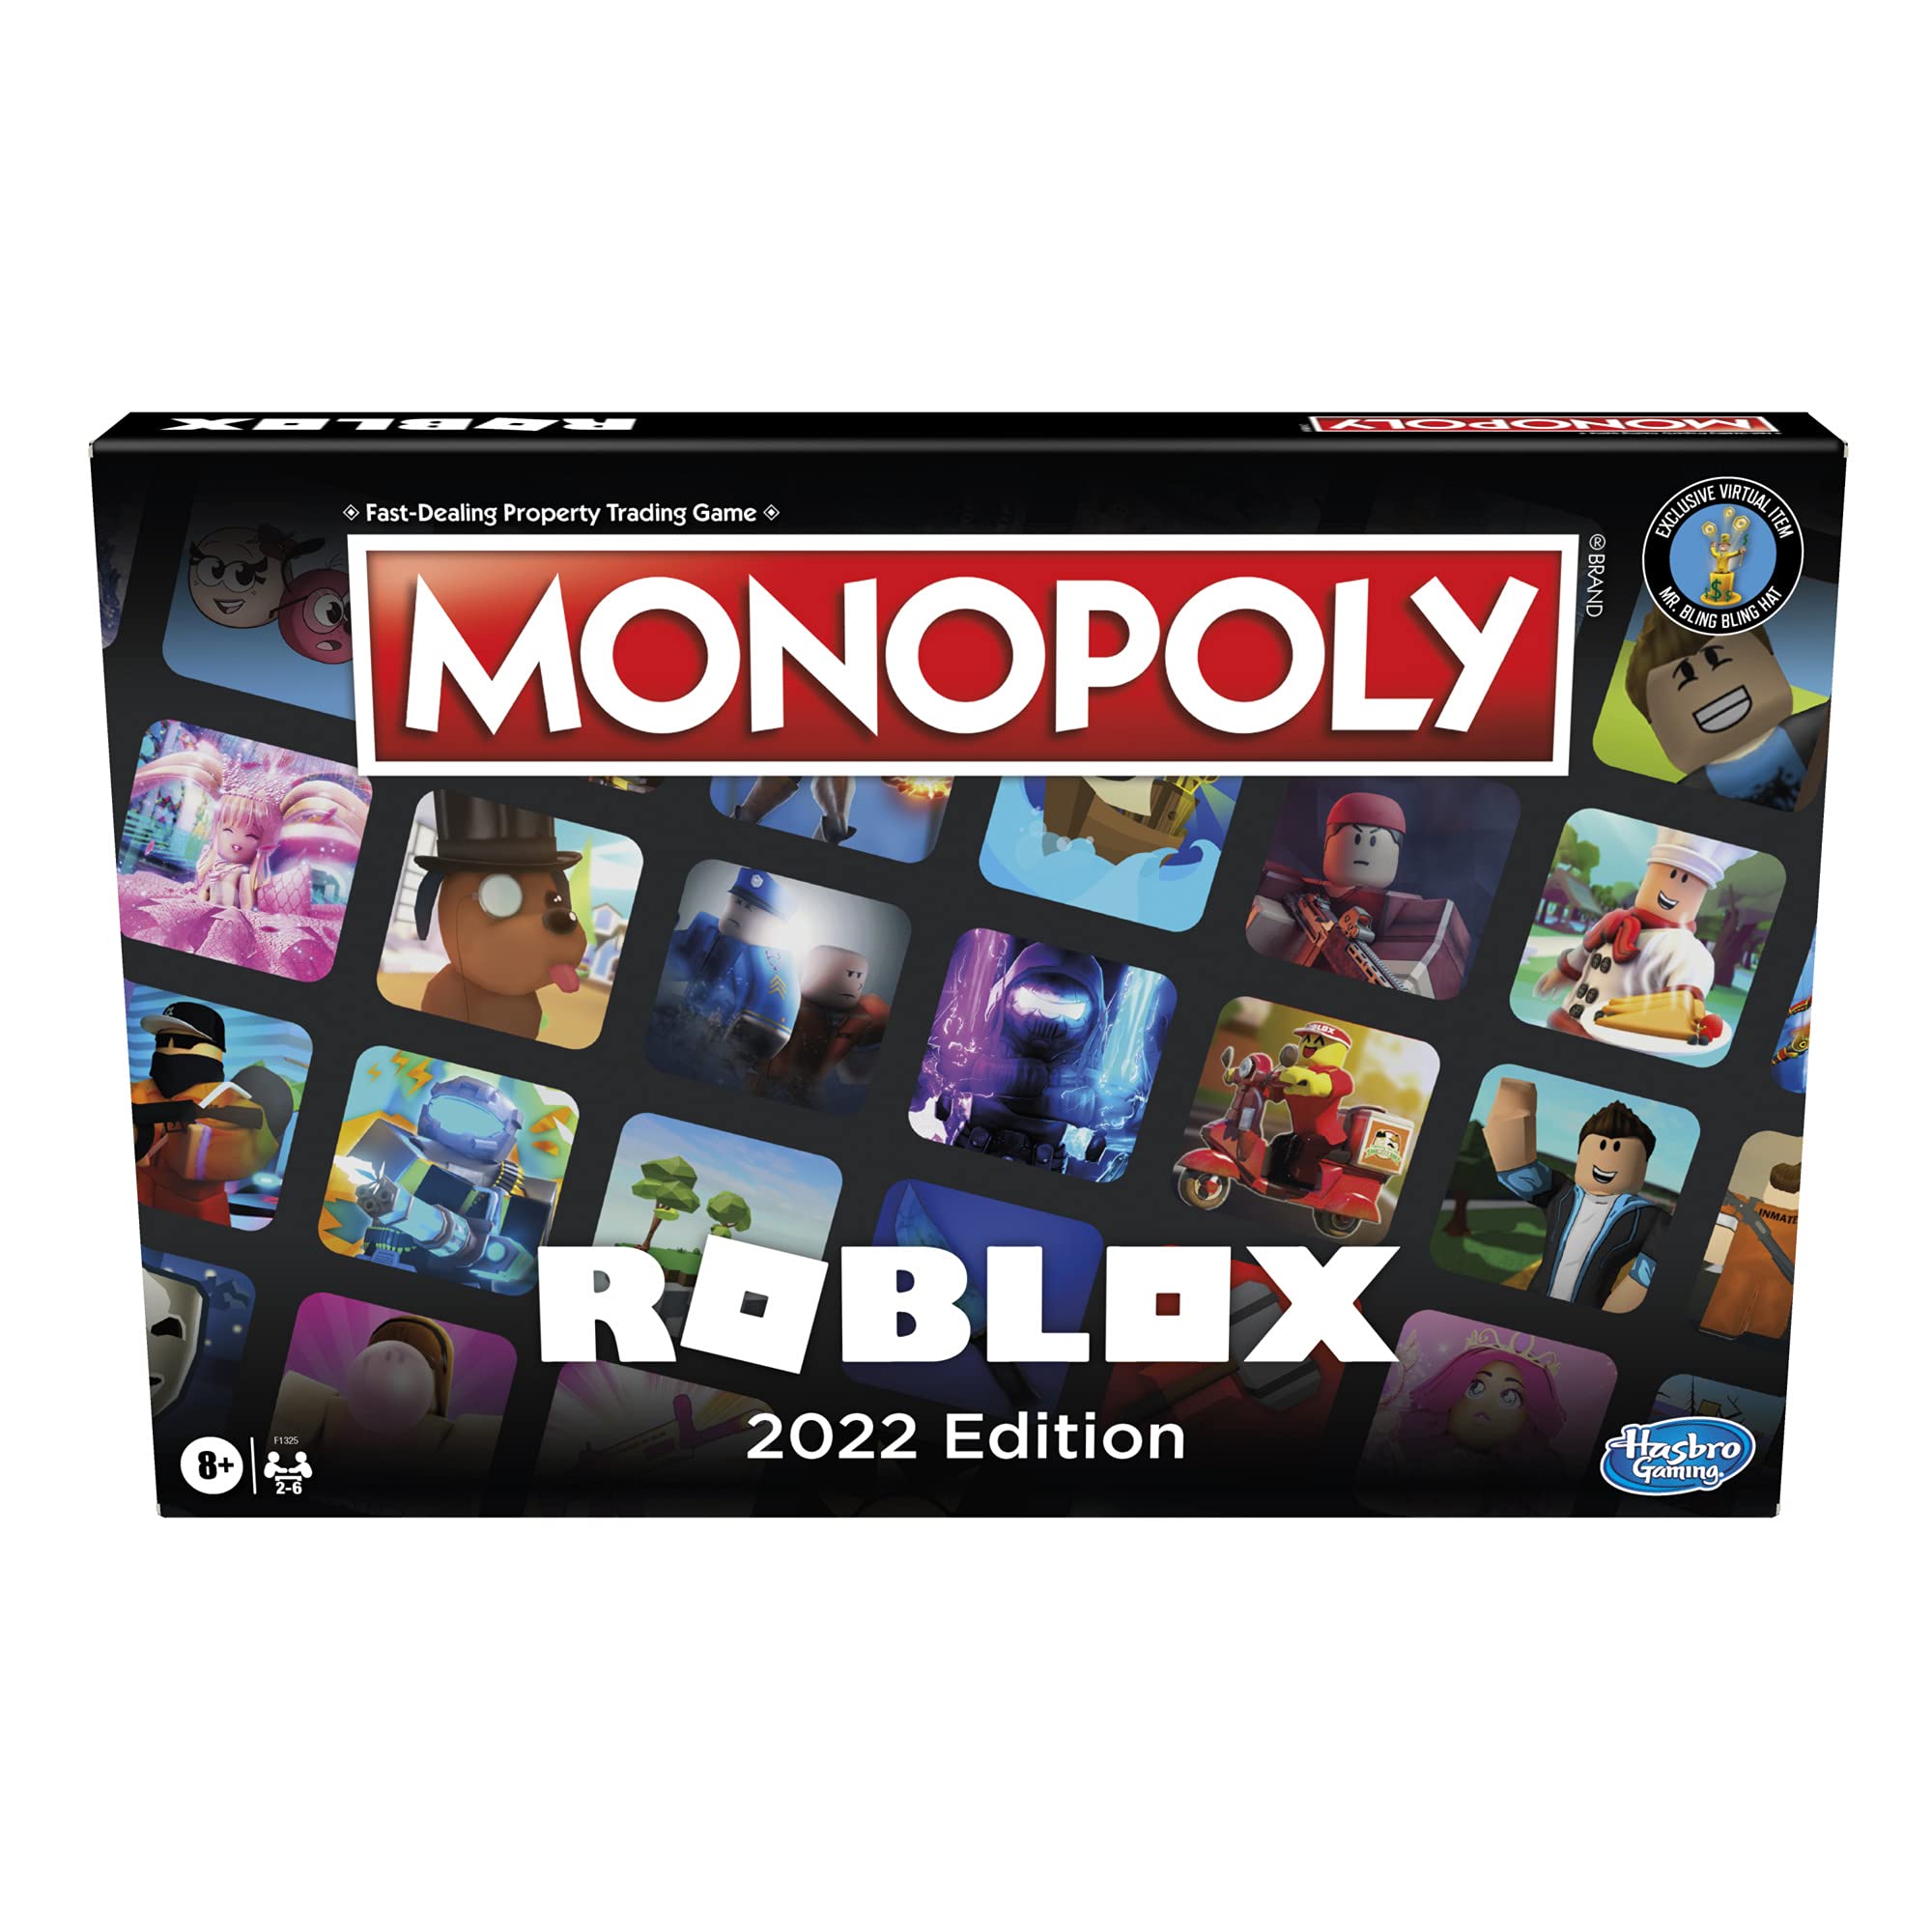 Monopoly Roblox phiên bản 2022 đã được nâng cấp với những tính năng mới lạ, mang đến trải nghiệm chơi game đầy thú vị và tinh tế. Với cốt truyện kết nối với thế giới game Roblox, phiên bản này sẽ là một trải nghiệm hoàn toàn mới cho game thủ yêu thích đồ họa đẹp và trí tuệ chiến lược. Hãy sở hữu ngay Roblox Monopoly phiên bản 2022 và trở thành nhà tài phiệt ưu tú trong thế giới Roblox!